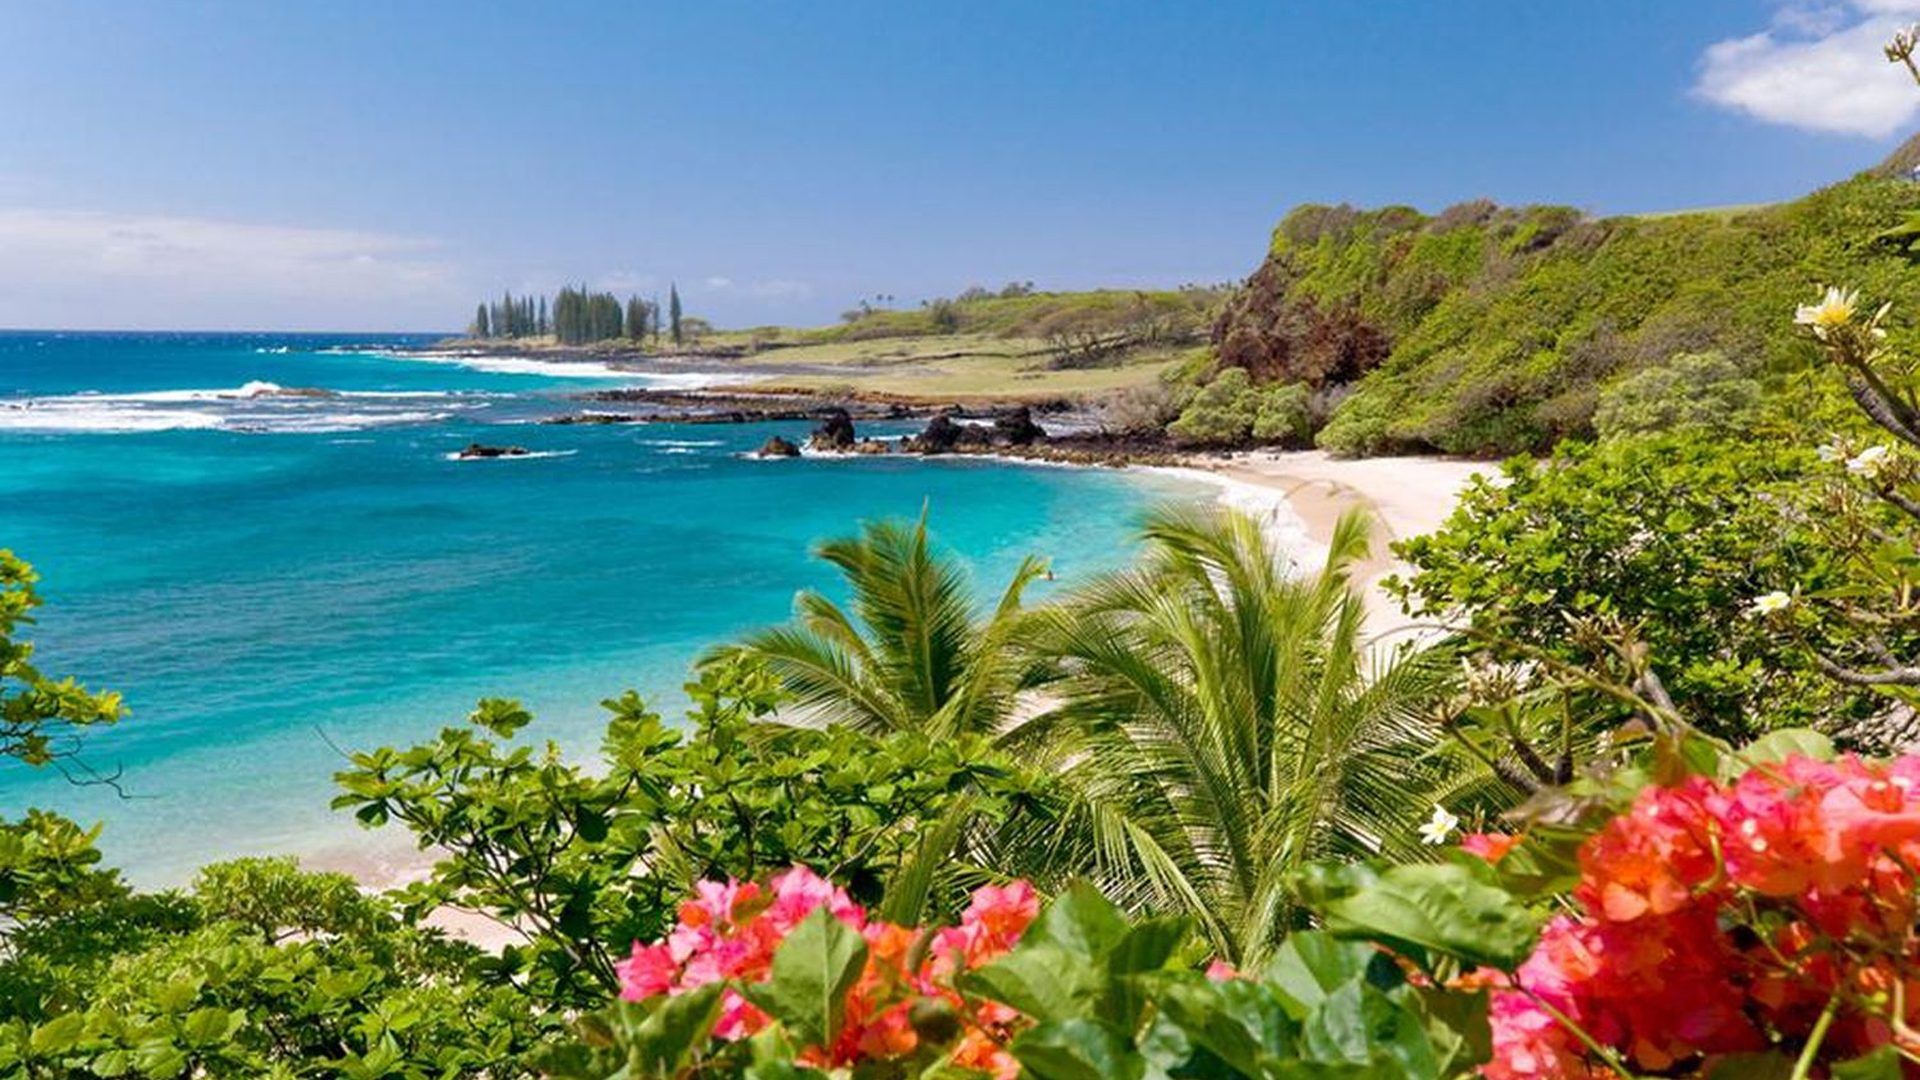 Hamoa Beach, Maui, Hawaii Wallpaper Widescreen HD Resolution 1920x1200, Wallpaper13.com